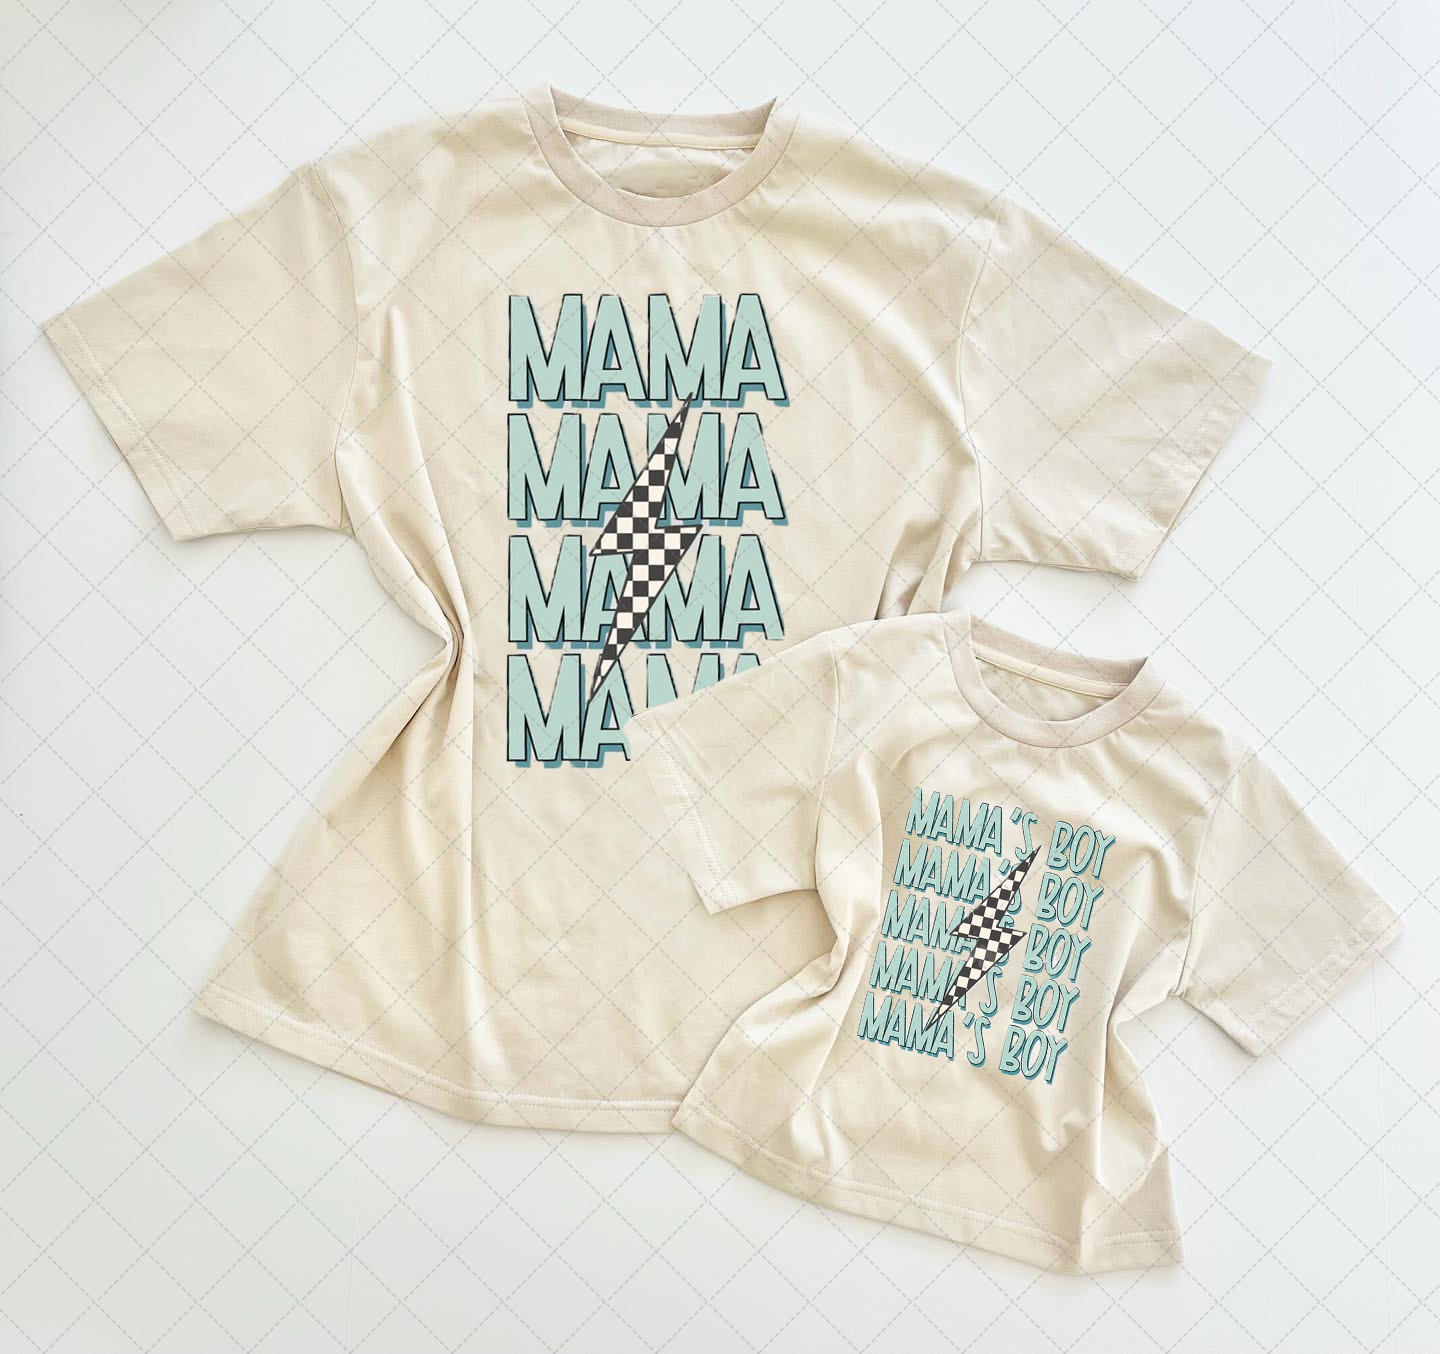 Mama's Boy And Mama Sweatshirt